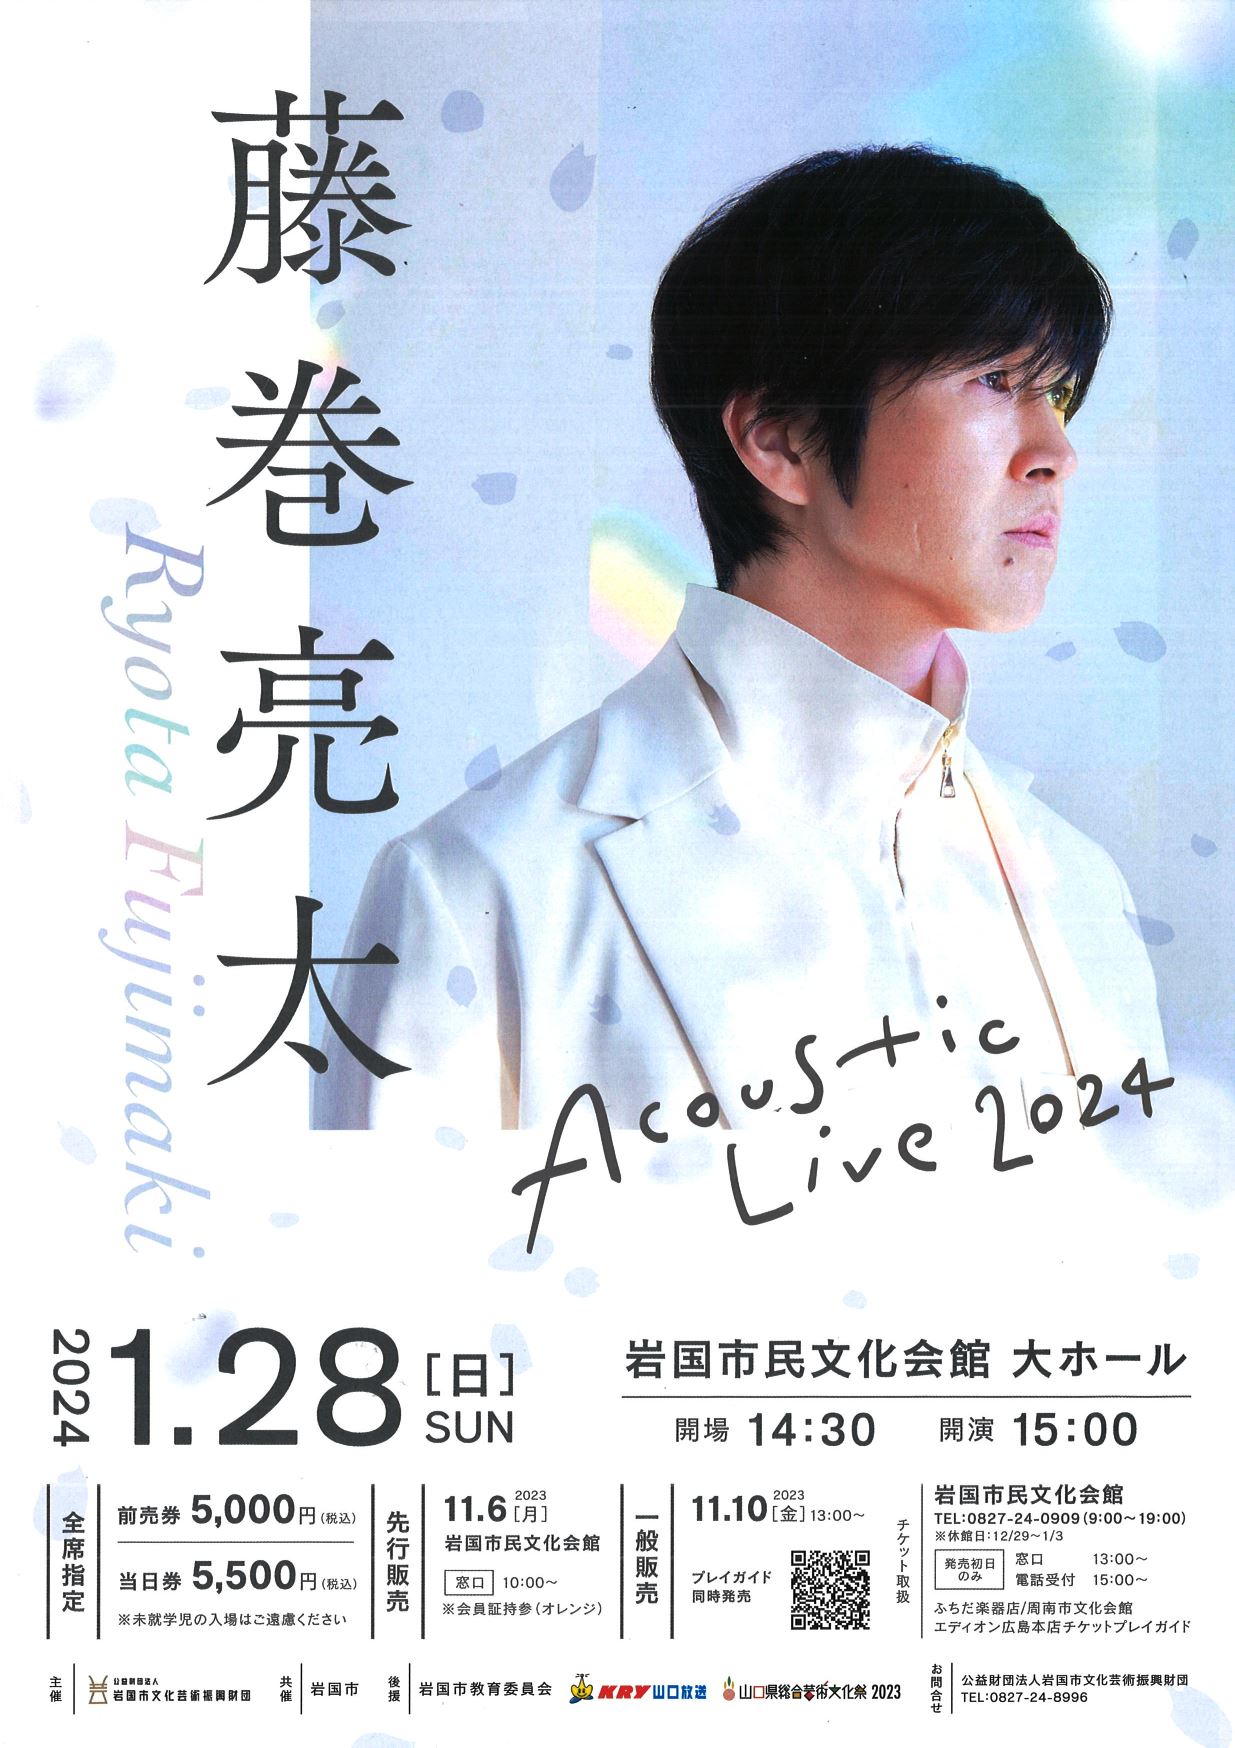 藤巻亮太 Acoustic Live 2024 1/28 - ふれあいeタウンいわくに